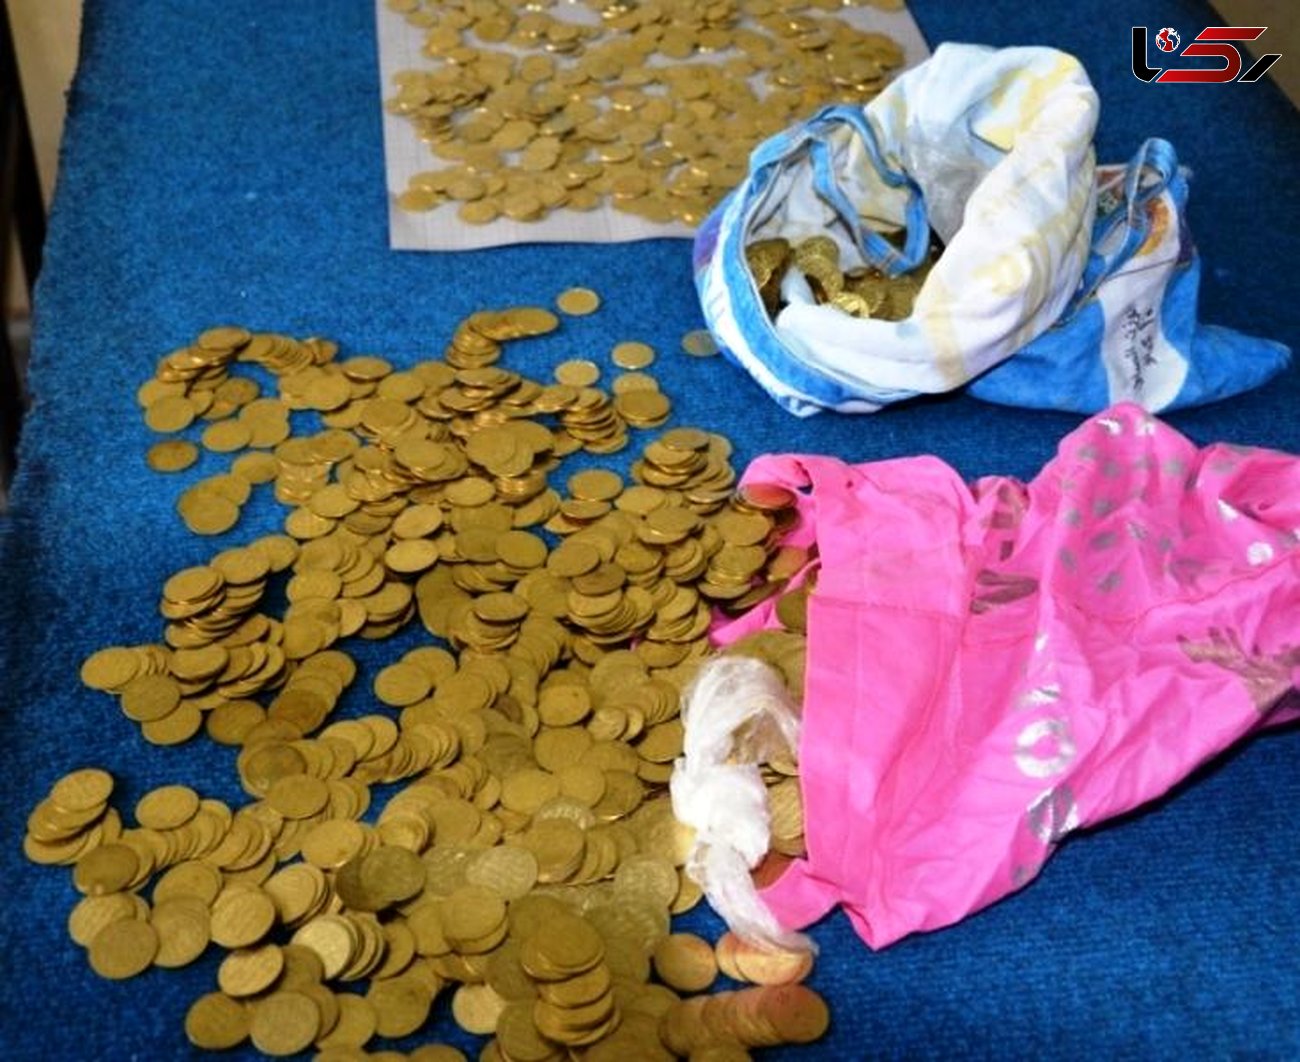 خریدار گنج قلابی به پلیس الیگودرز شکایت کرد!/ سکه های تقلبی را 5میلیارد خریده بود!